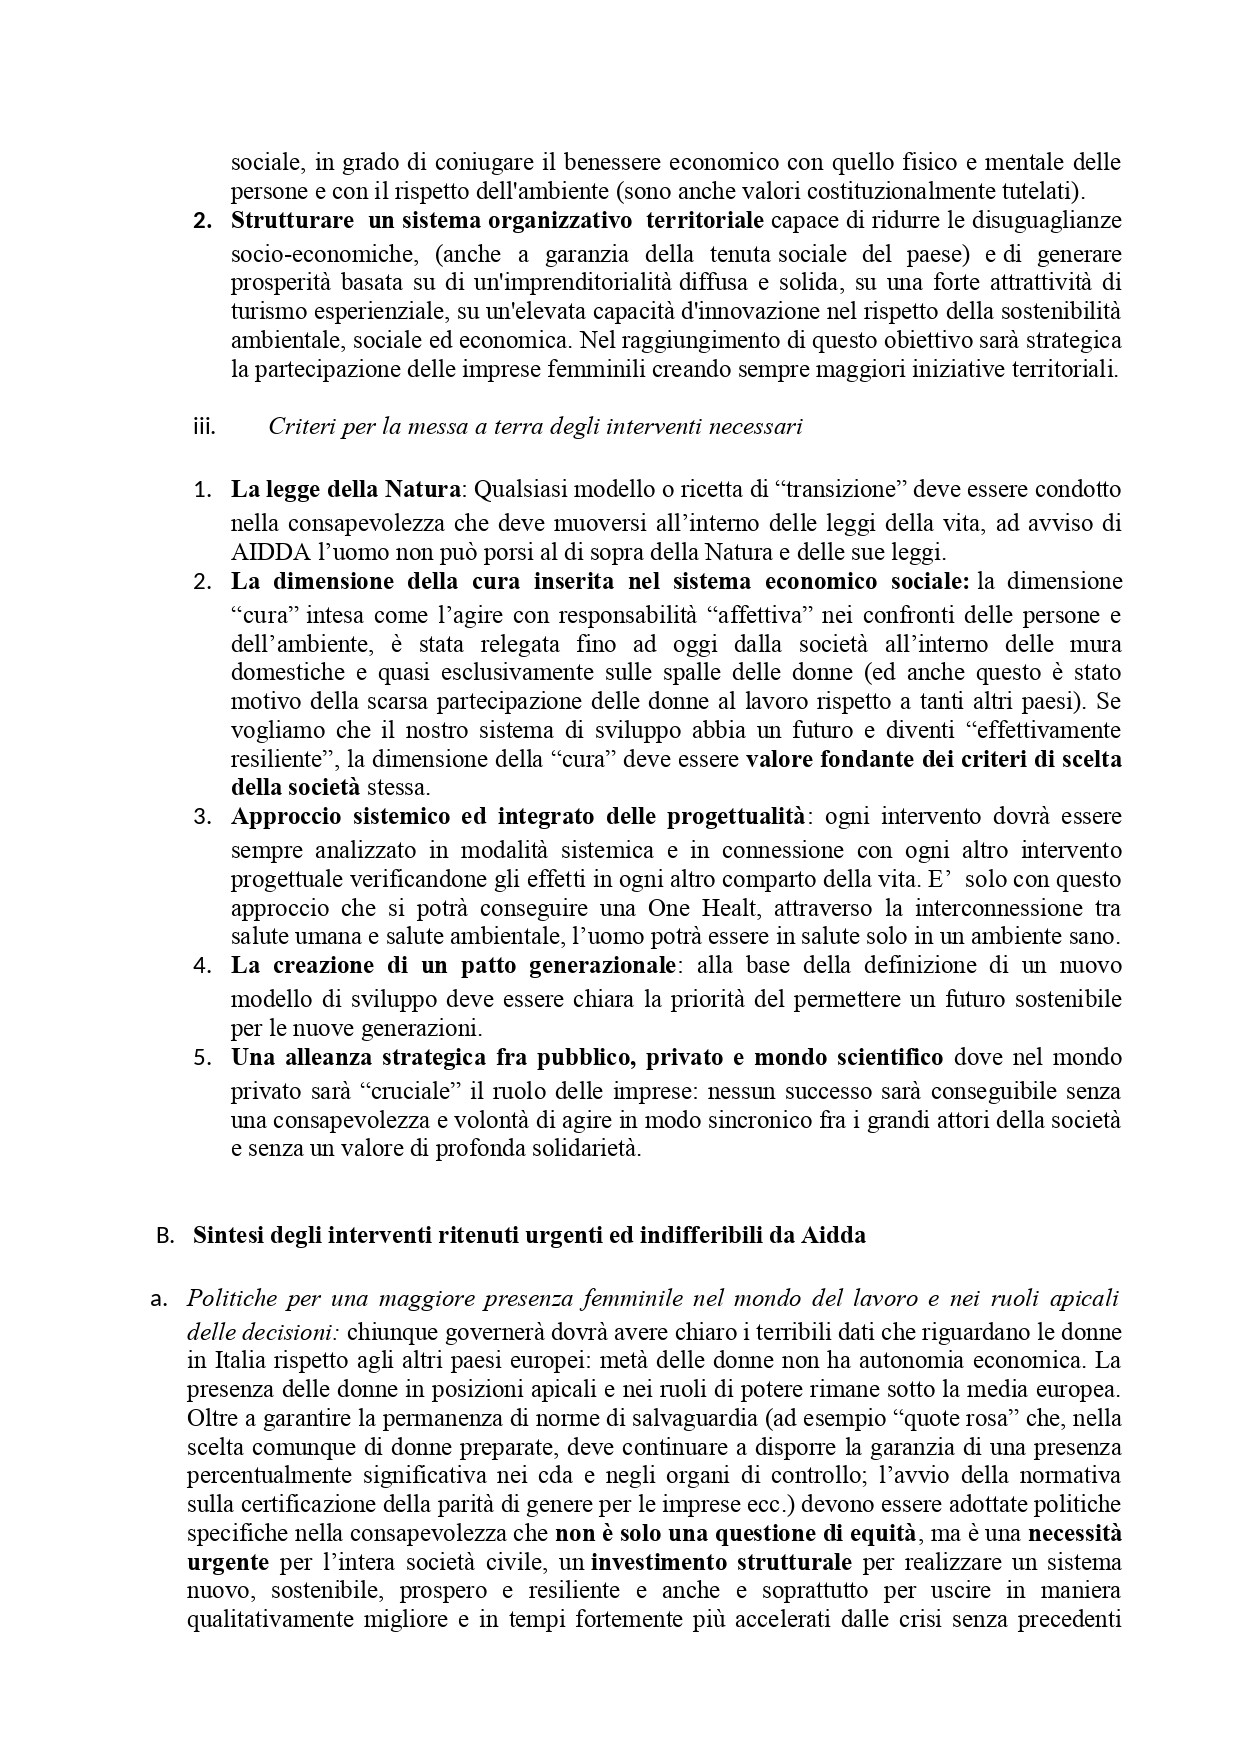 AIDDA_DOCUMENTO DI RICHIESTA ALLE FORZE POLITICHE_page-0002.jpg